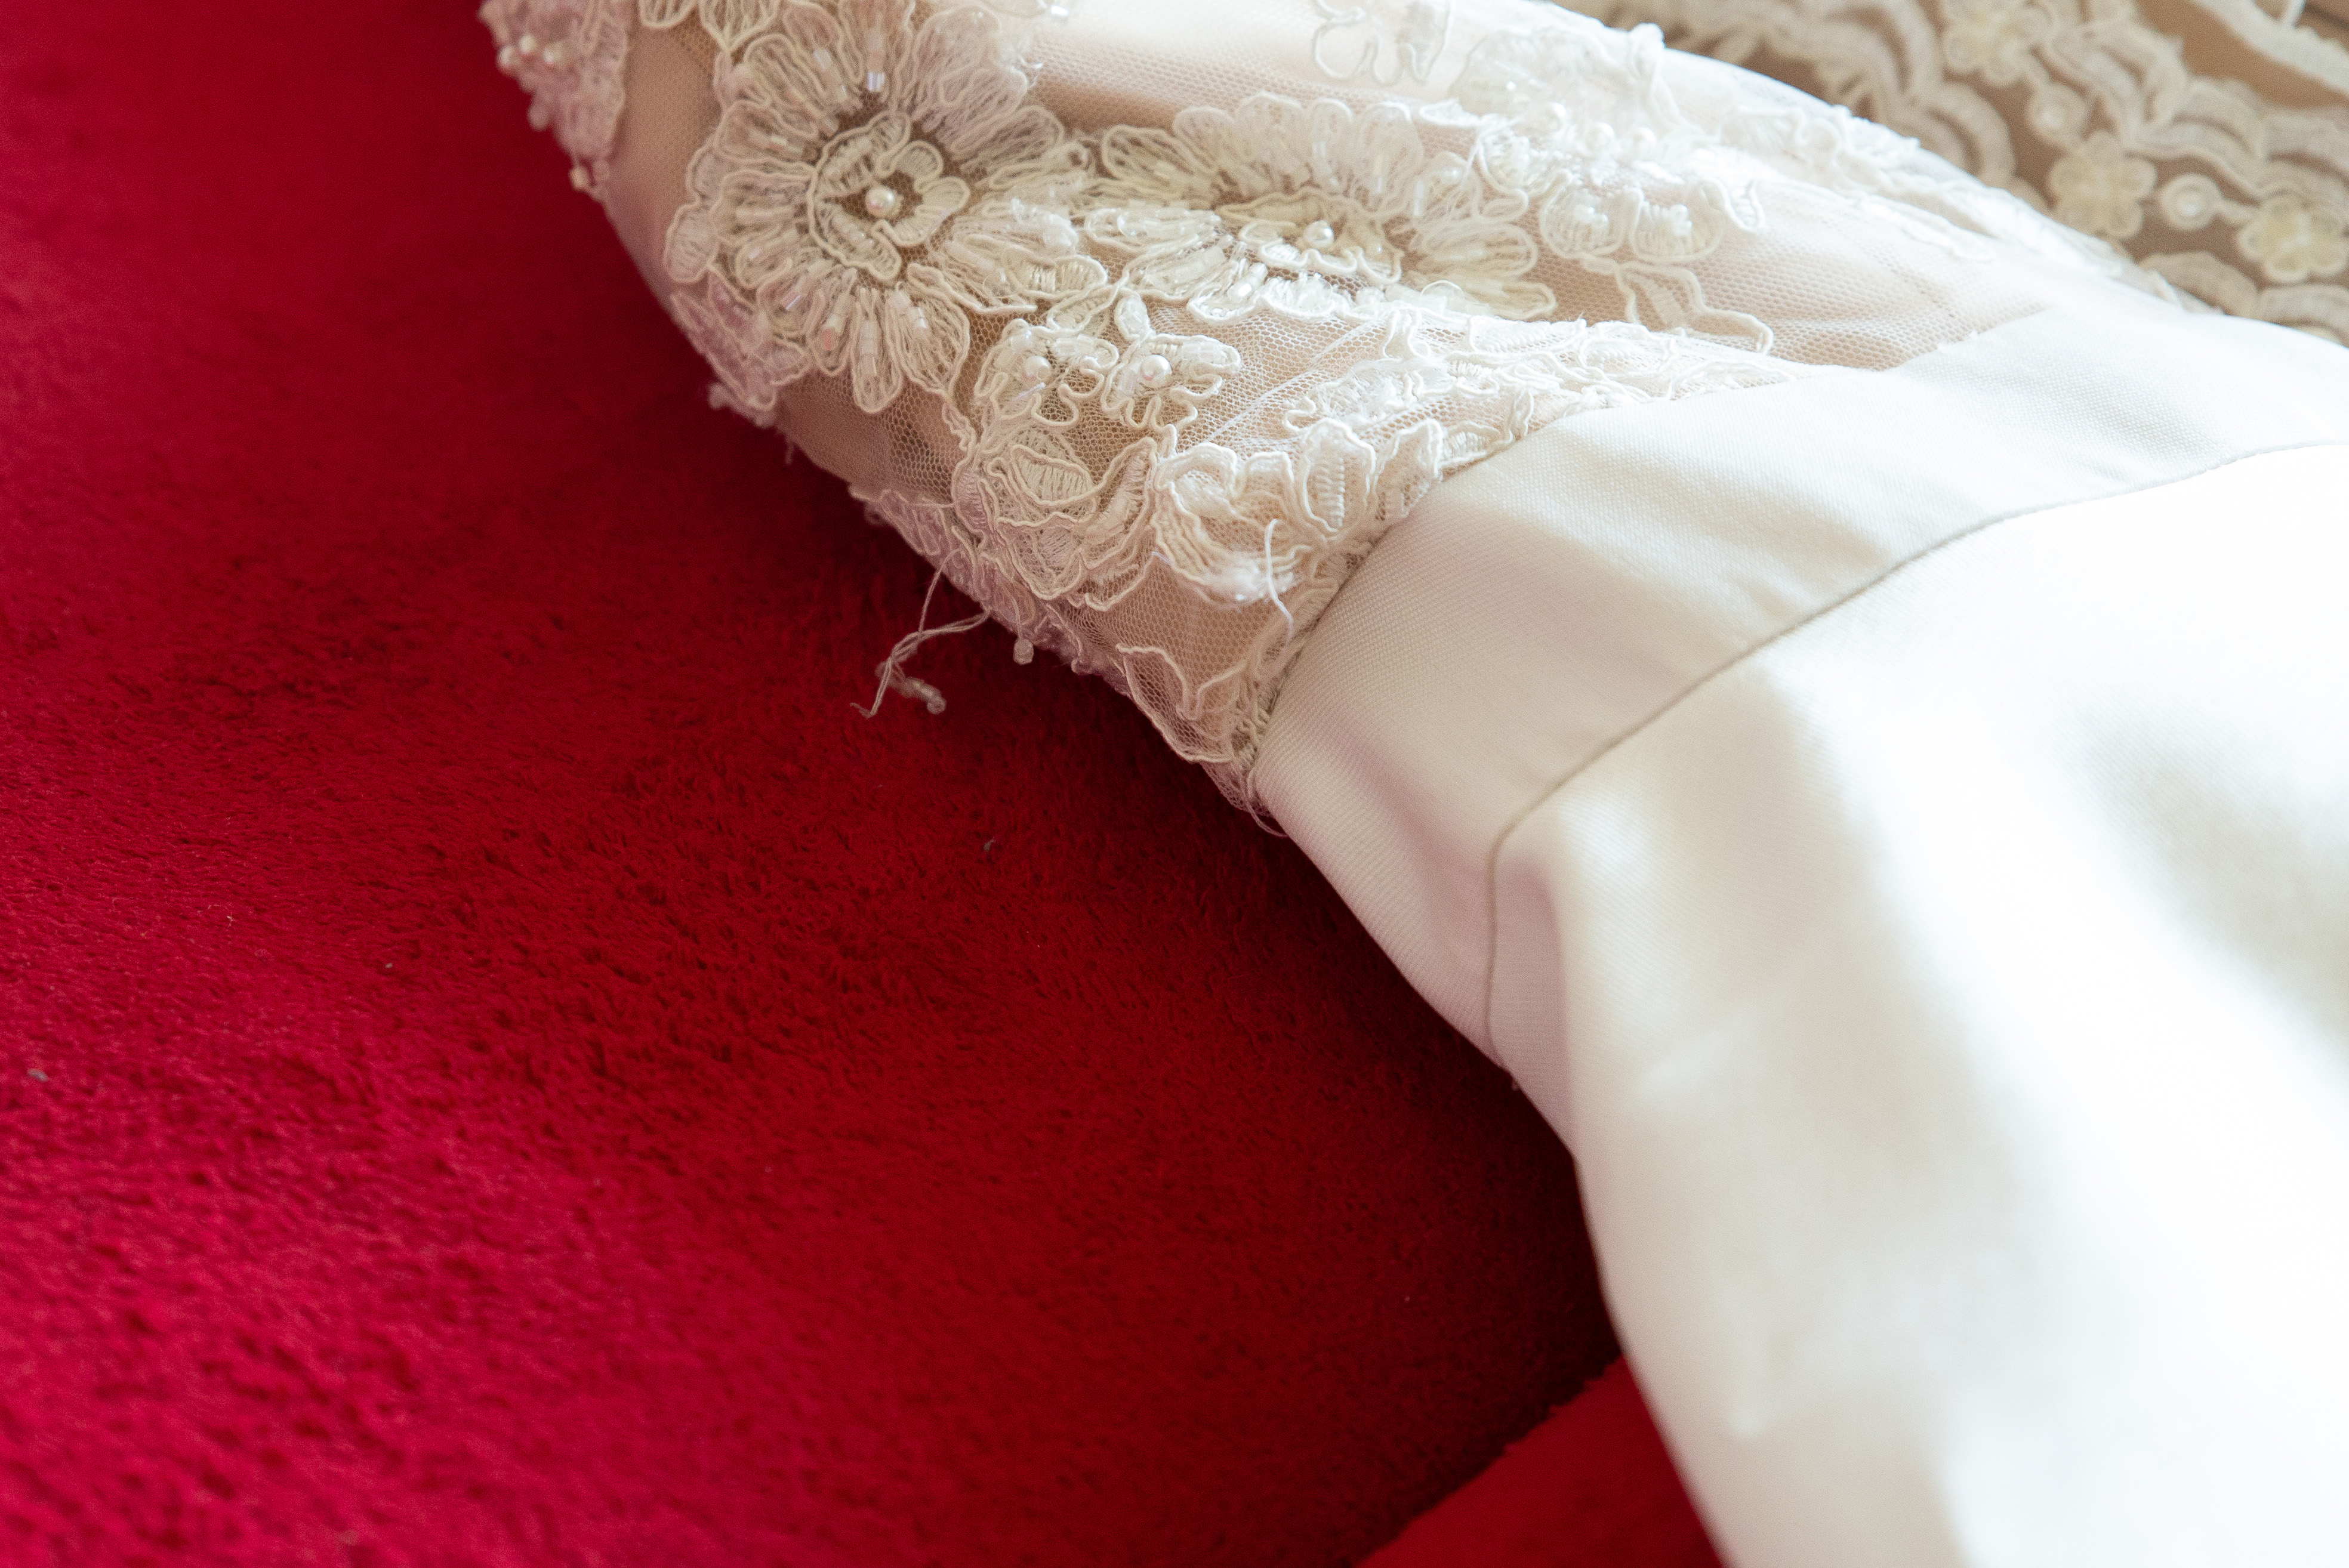 Nahaufnahme eines zerrissenen weißen Kleides | Quelle: Shutterstock